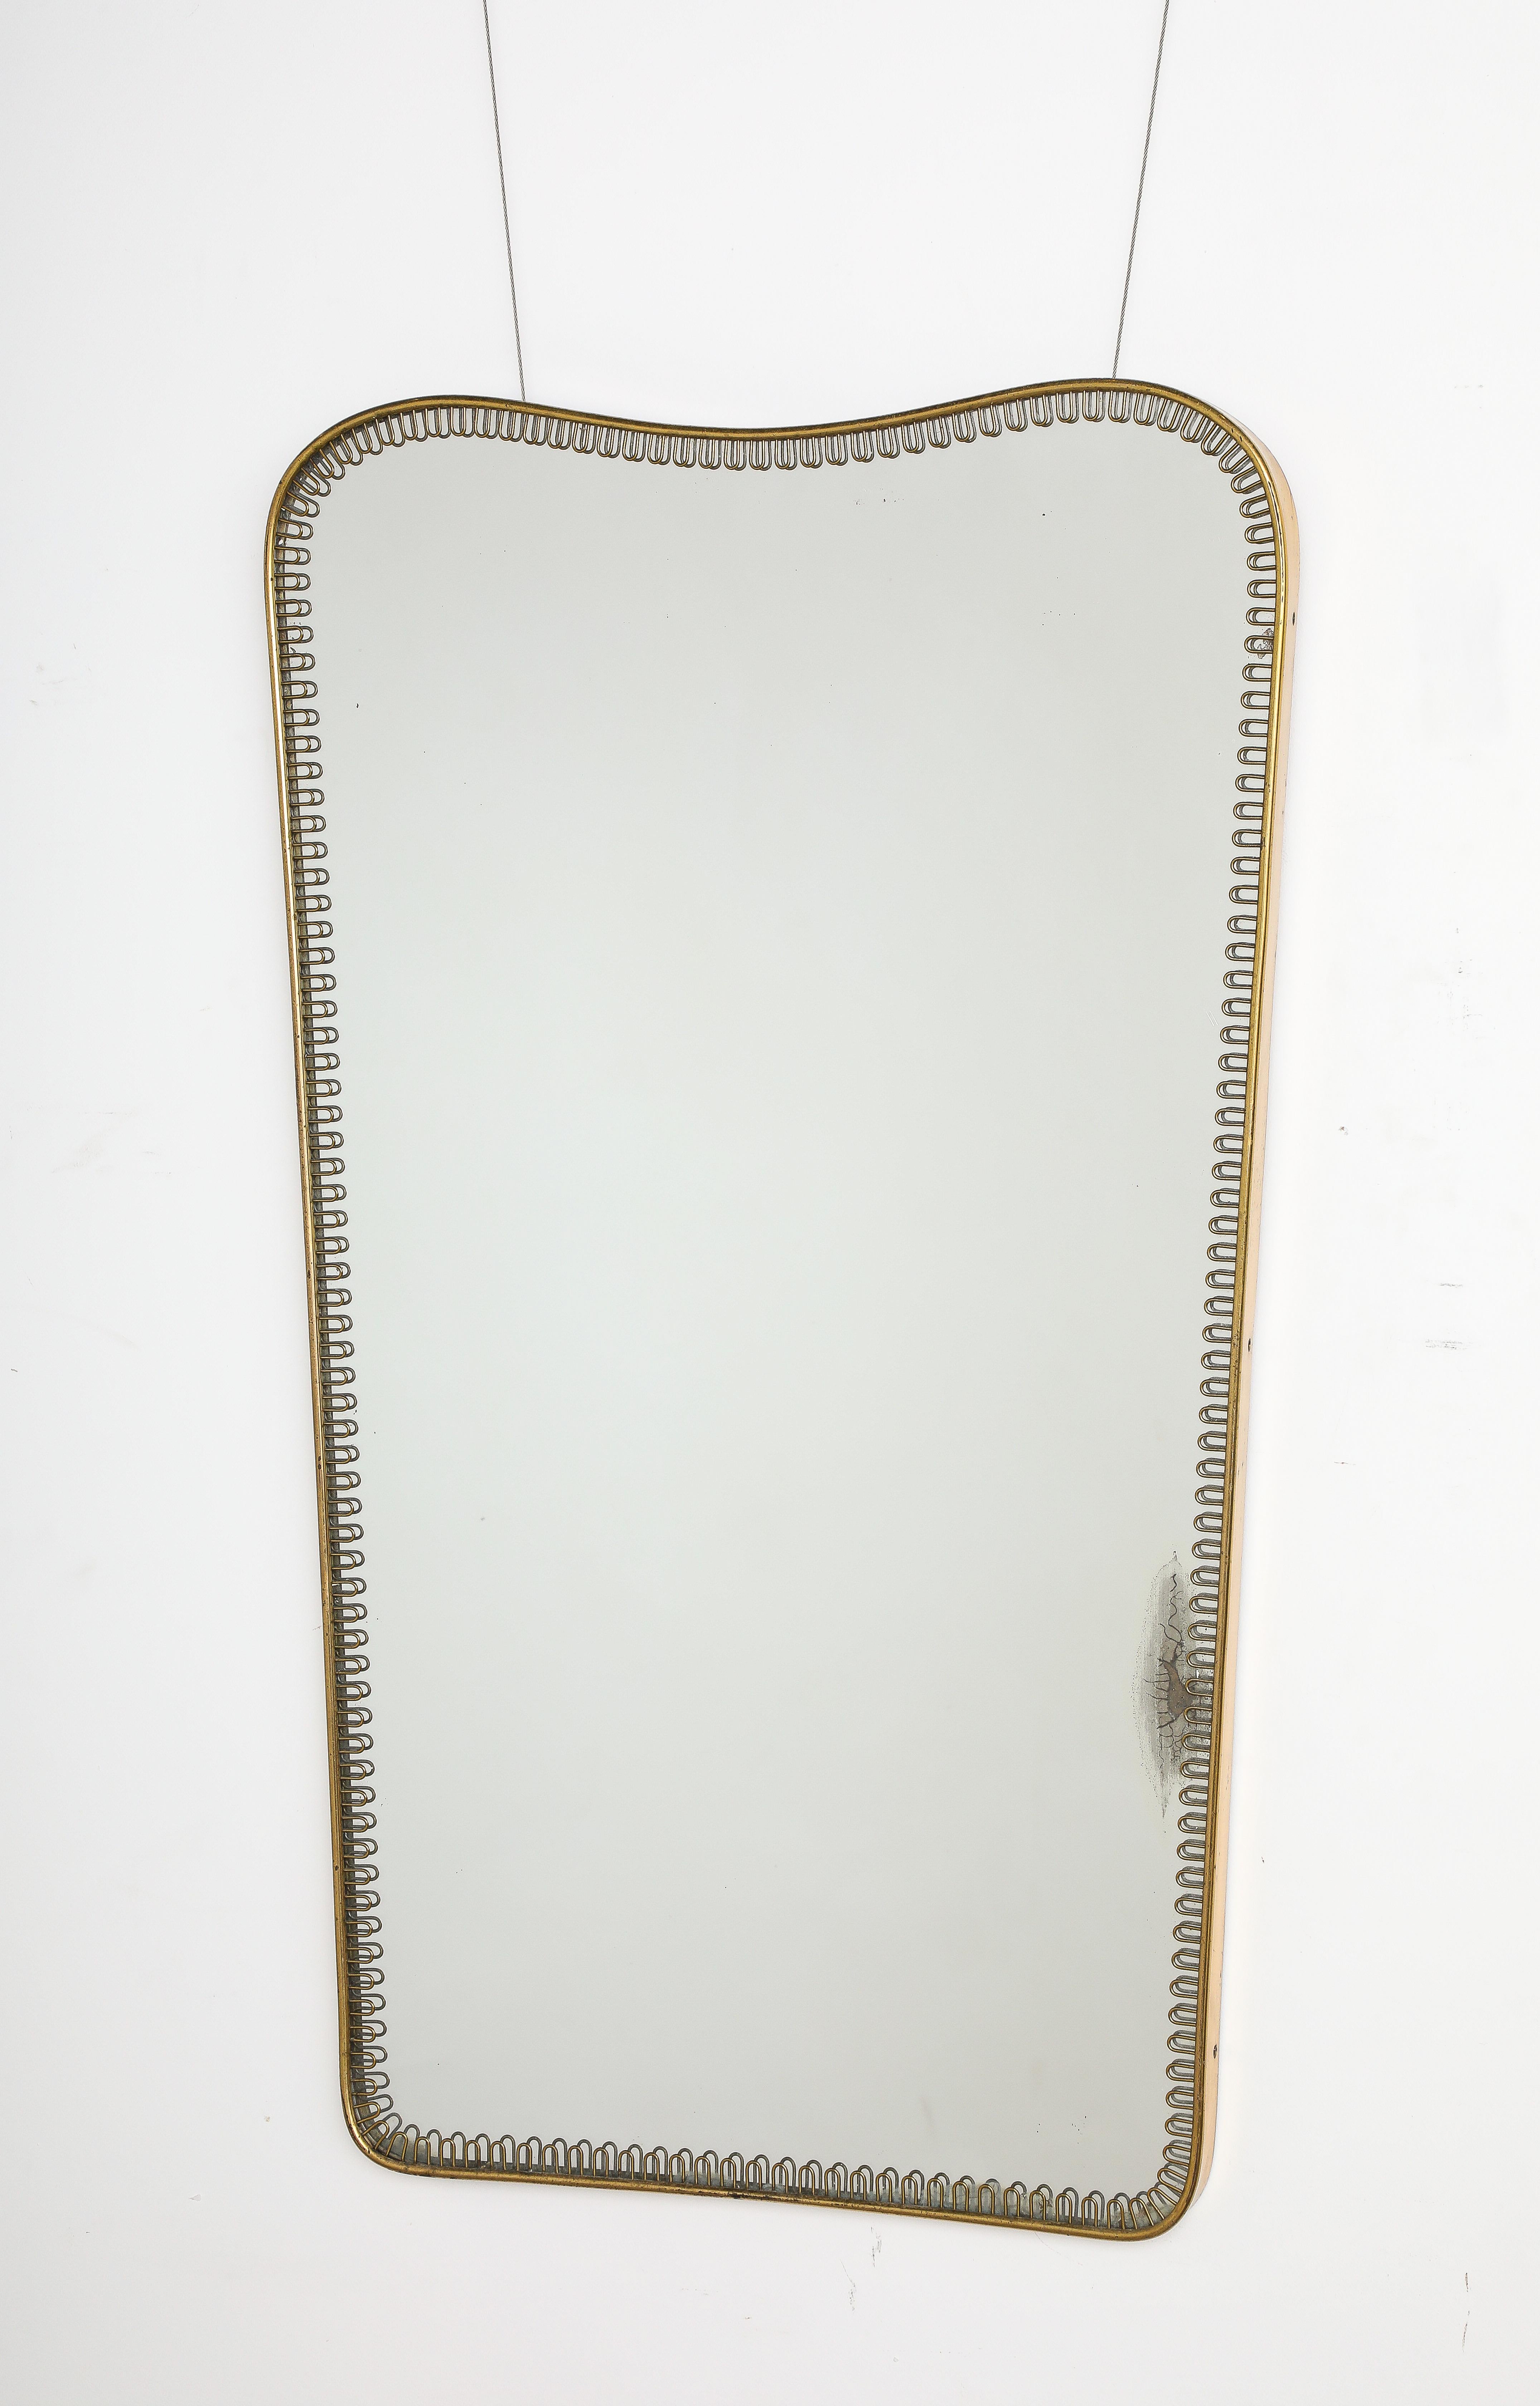 Ein seltener und eleganter Spiegel mit Messingrahmen, der dem Designer Gio Ponti zugeschrieben wird. Die Krone ist geformt und verjüngt sich nach unten zu einer geraden Seite und einem Sockel.  Die gesamte Spiegelplatte ist von einer Messingschnecke